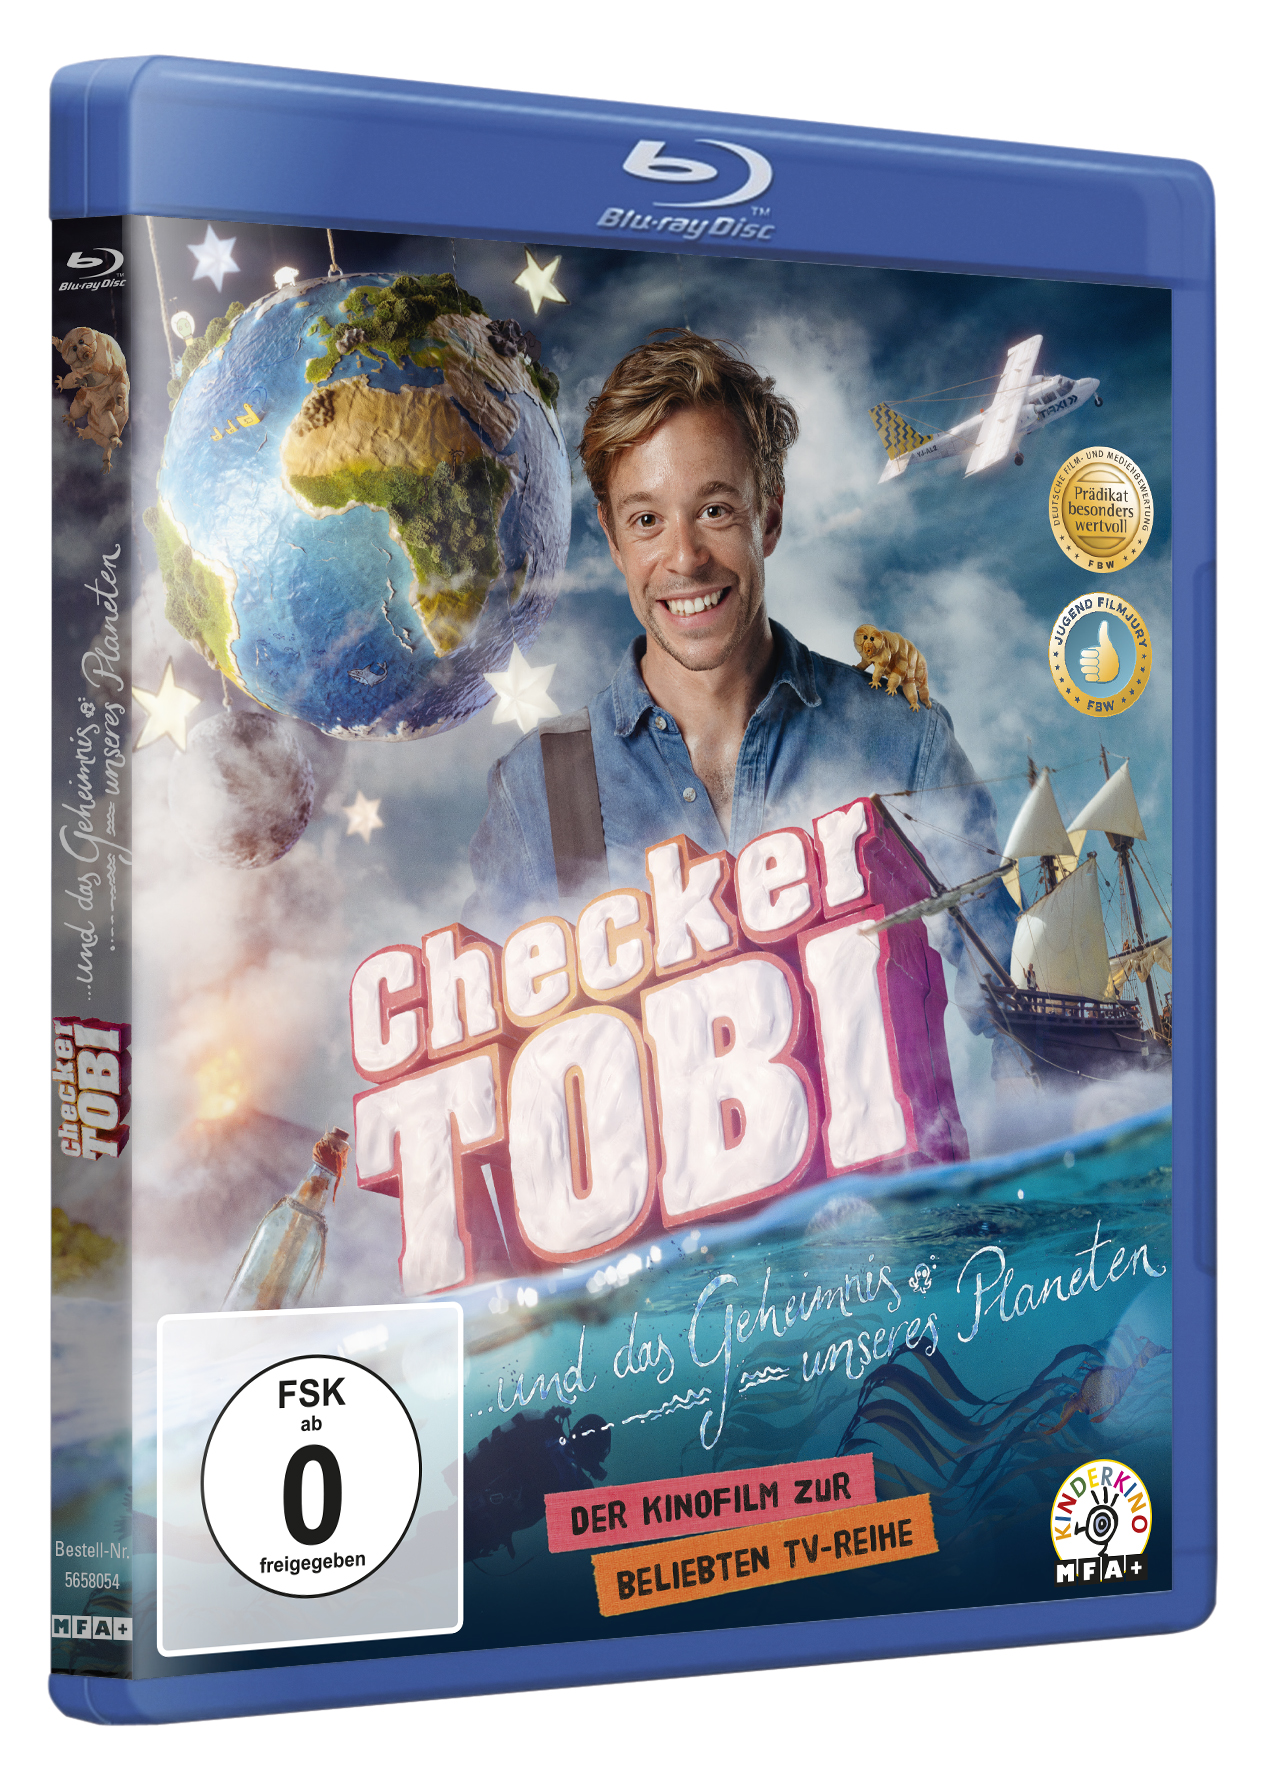 Blu-ray Tobi Geheimnis das unseres Planeten Checker und